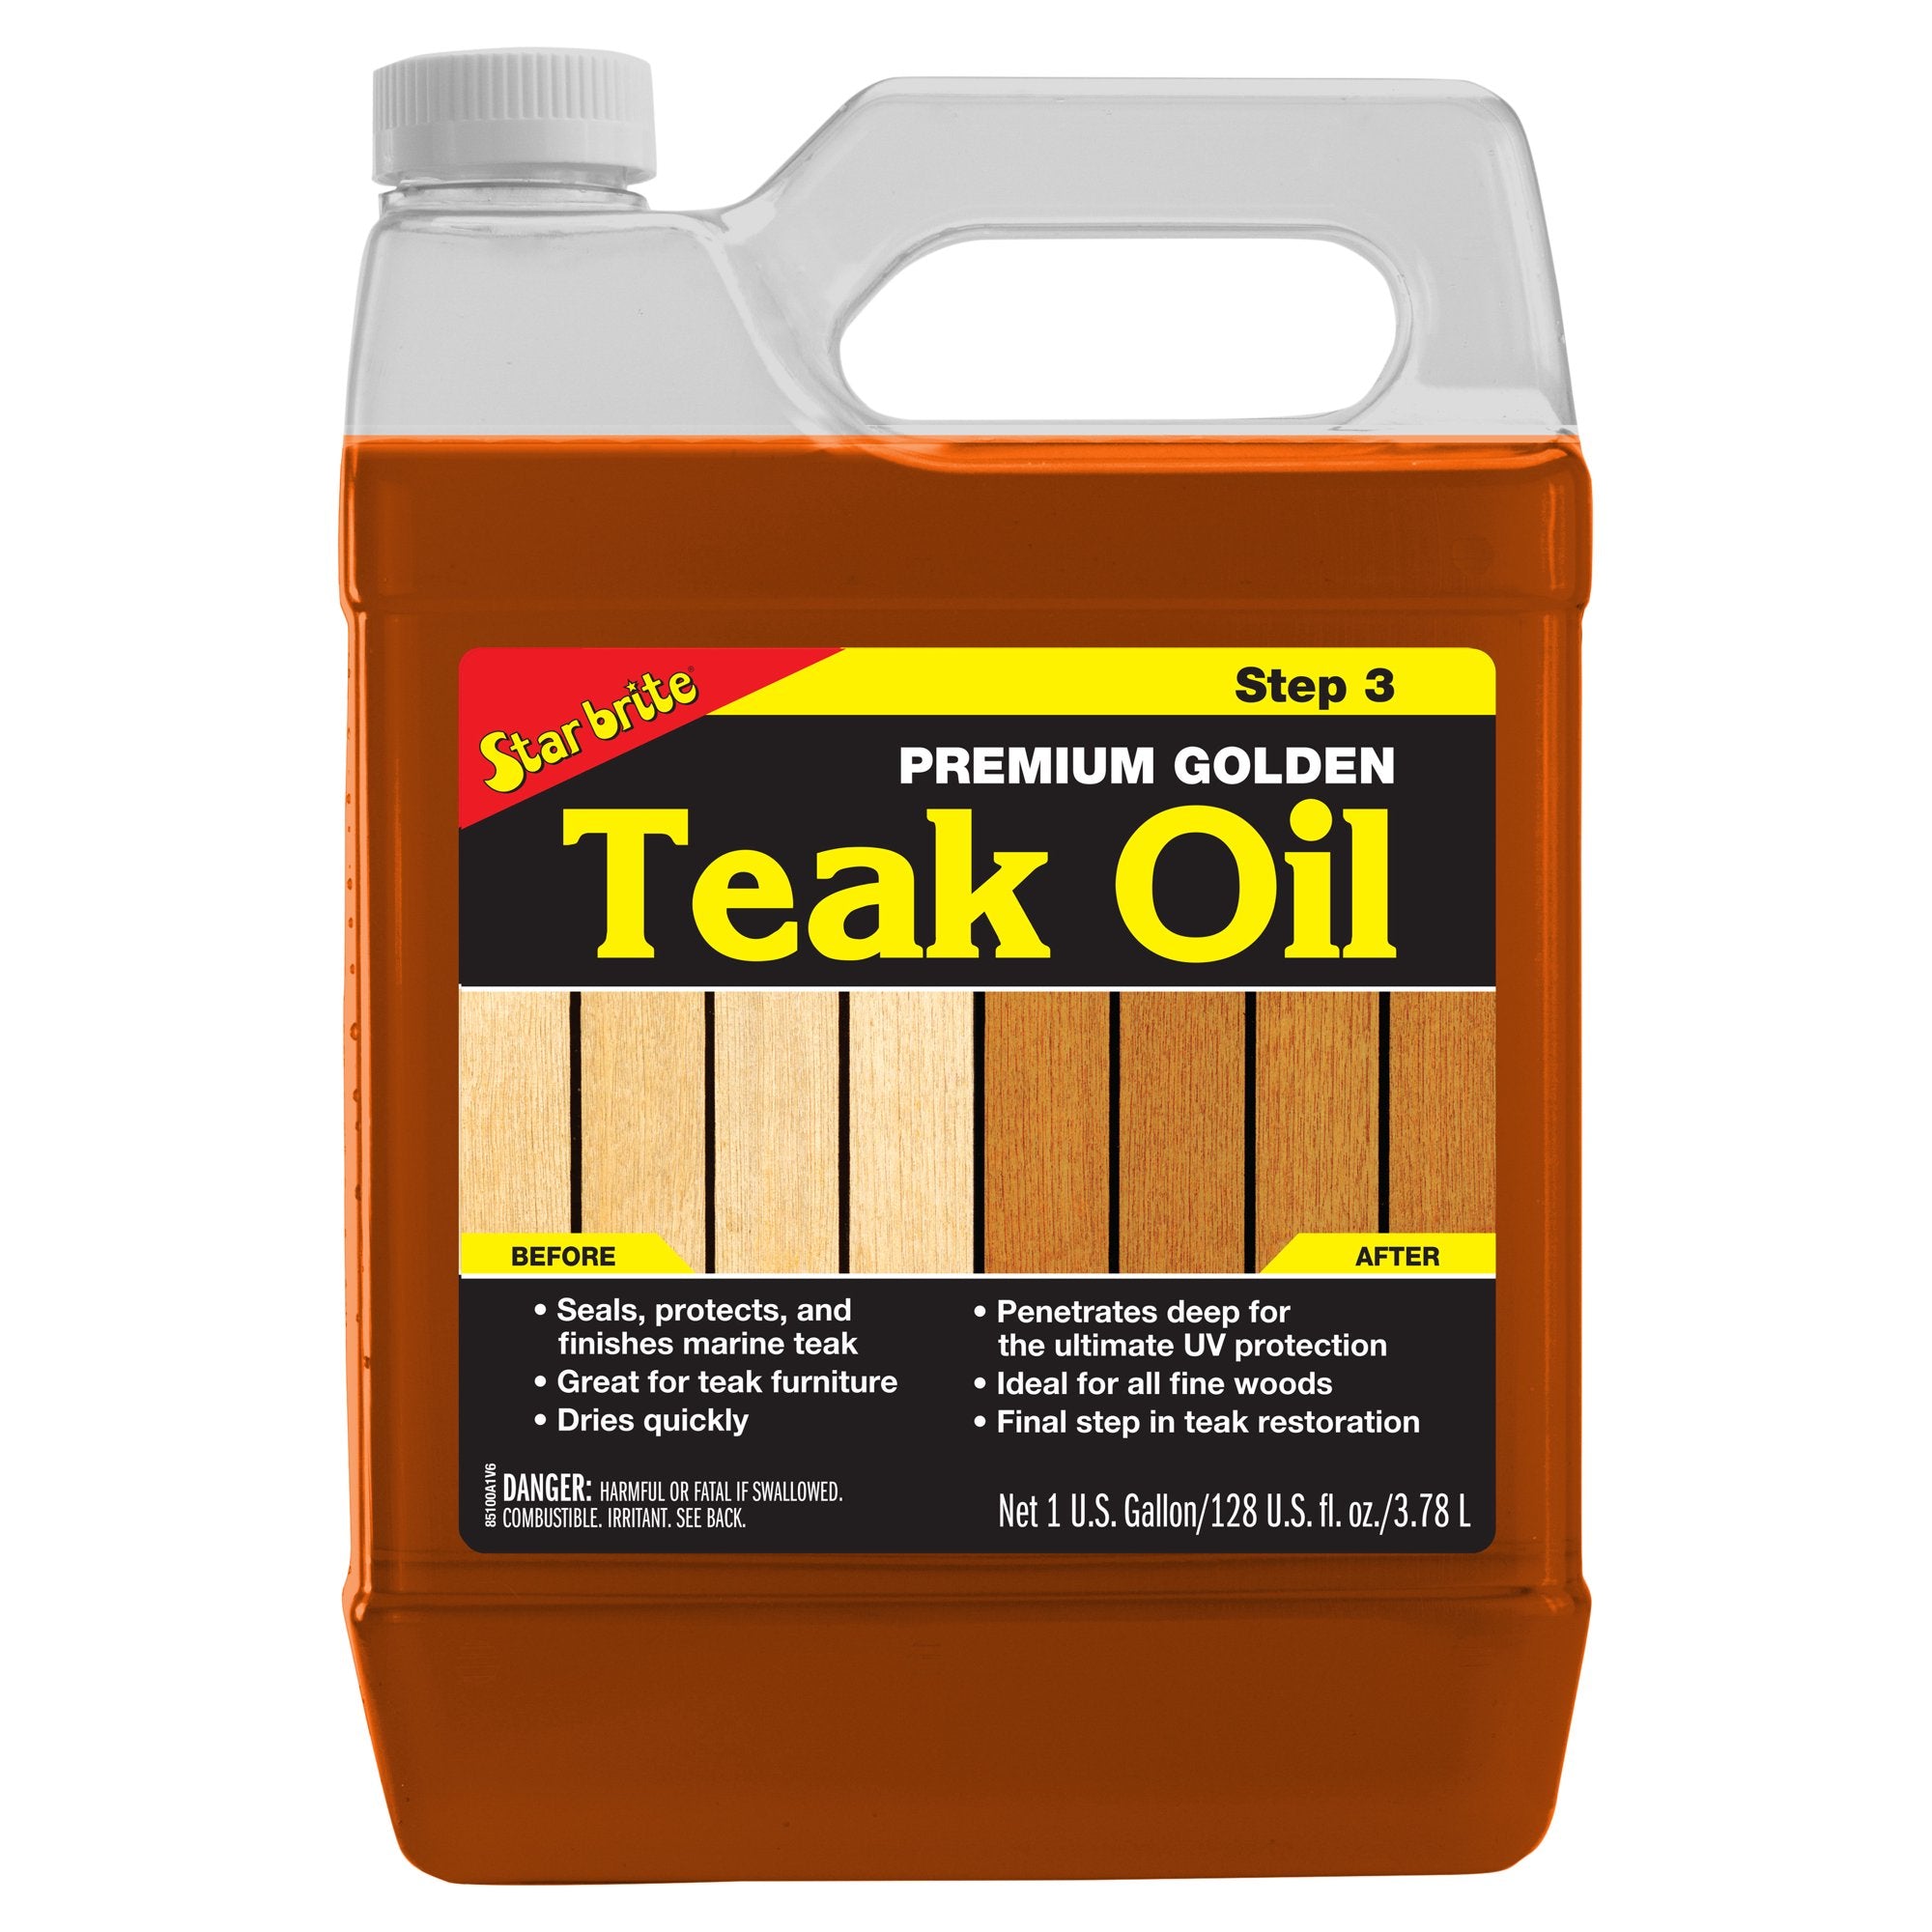 Premium Golden Teak Oil -Step 3 85100